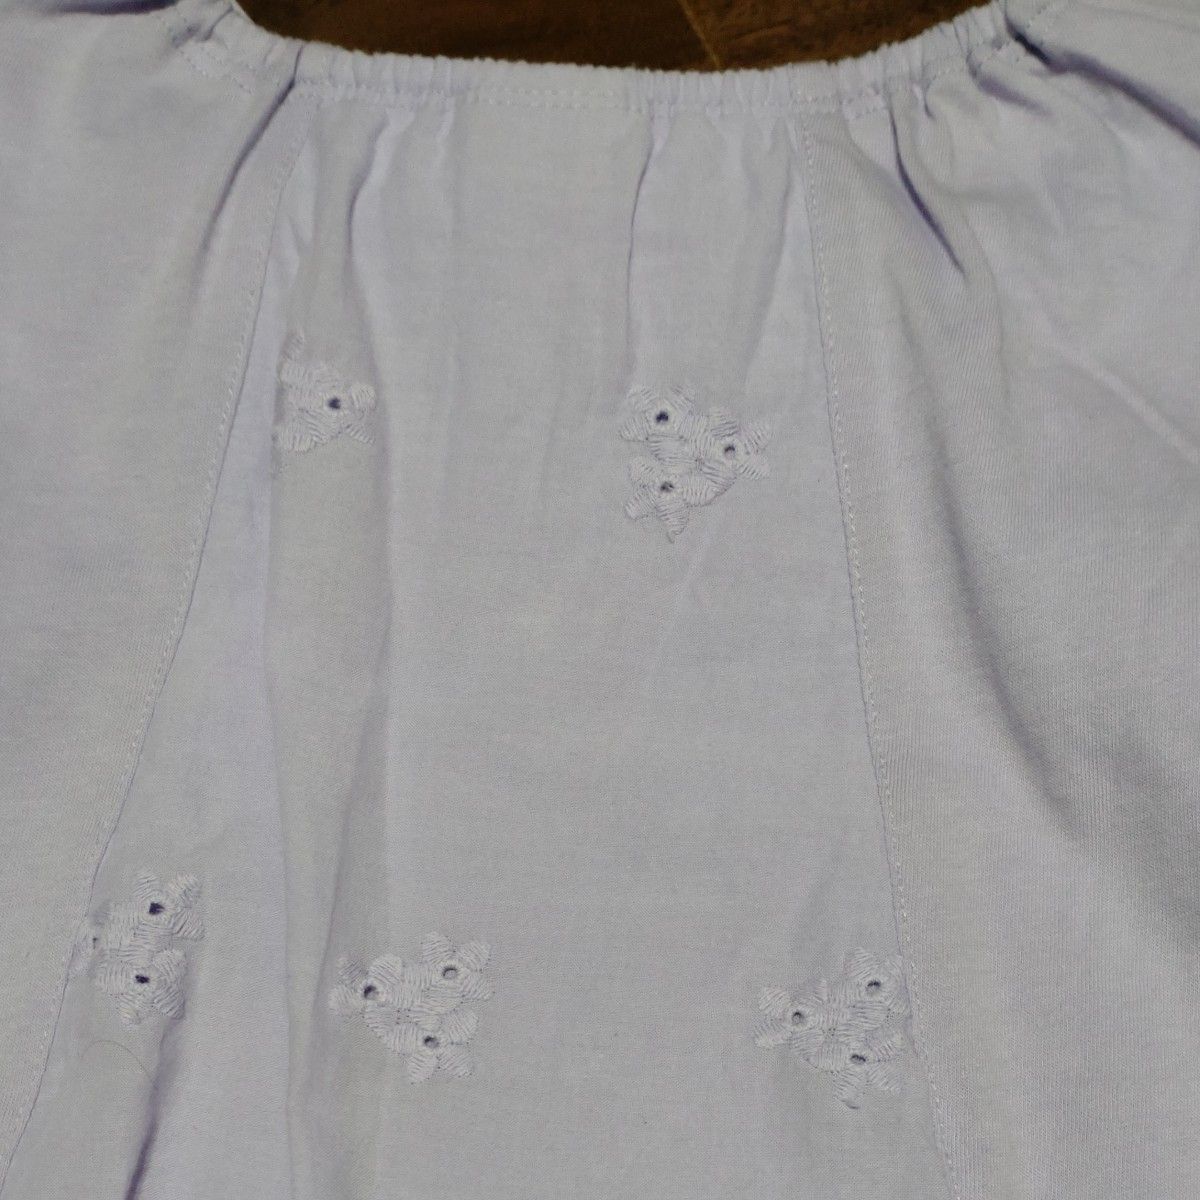 ANNA SUIMini　アナスイミニ 130cm  ロンT Tシャツ 長袖Tシャツ 長袖 キッズ 薄紫色 猫 ネコ ねこ